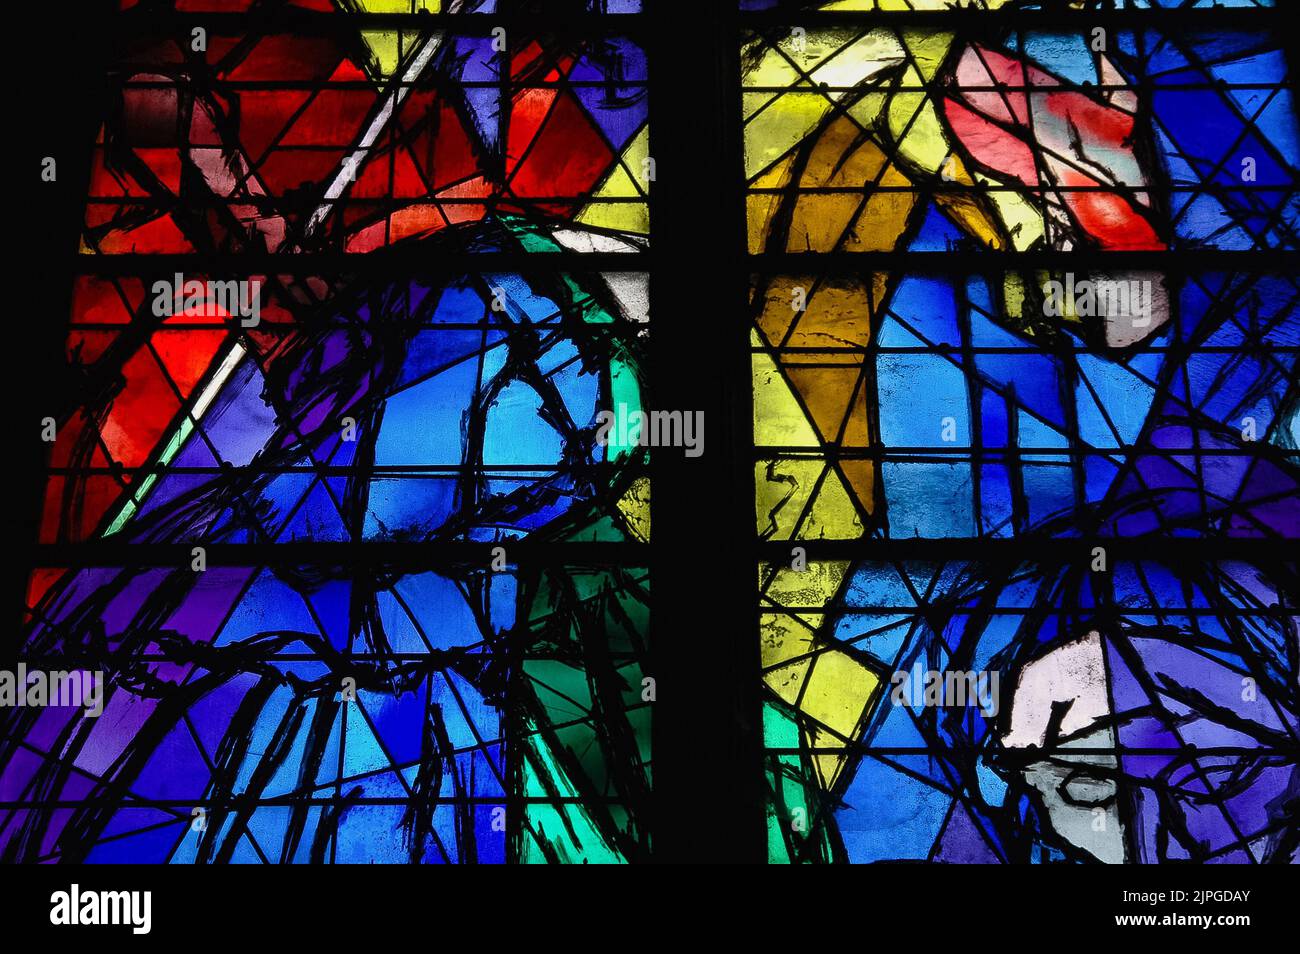 Viola intenso e rosso a giallo pastello… La ricca tavolozza di colori usata dall'artista modernista Marc Chagall in questo dettaglio di una delle acclamate vetrate bibliche dell'Antico Testamento che creò tra il 1958 e il 1970 per la Cattedrale Cattolica Romana di Metz, nella regione del Grand Est della Francia nord-orientale. Foto Stock